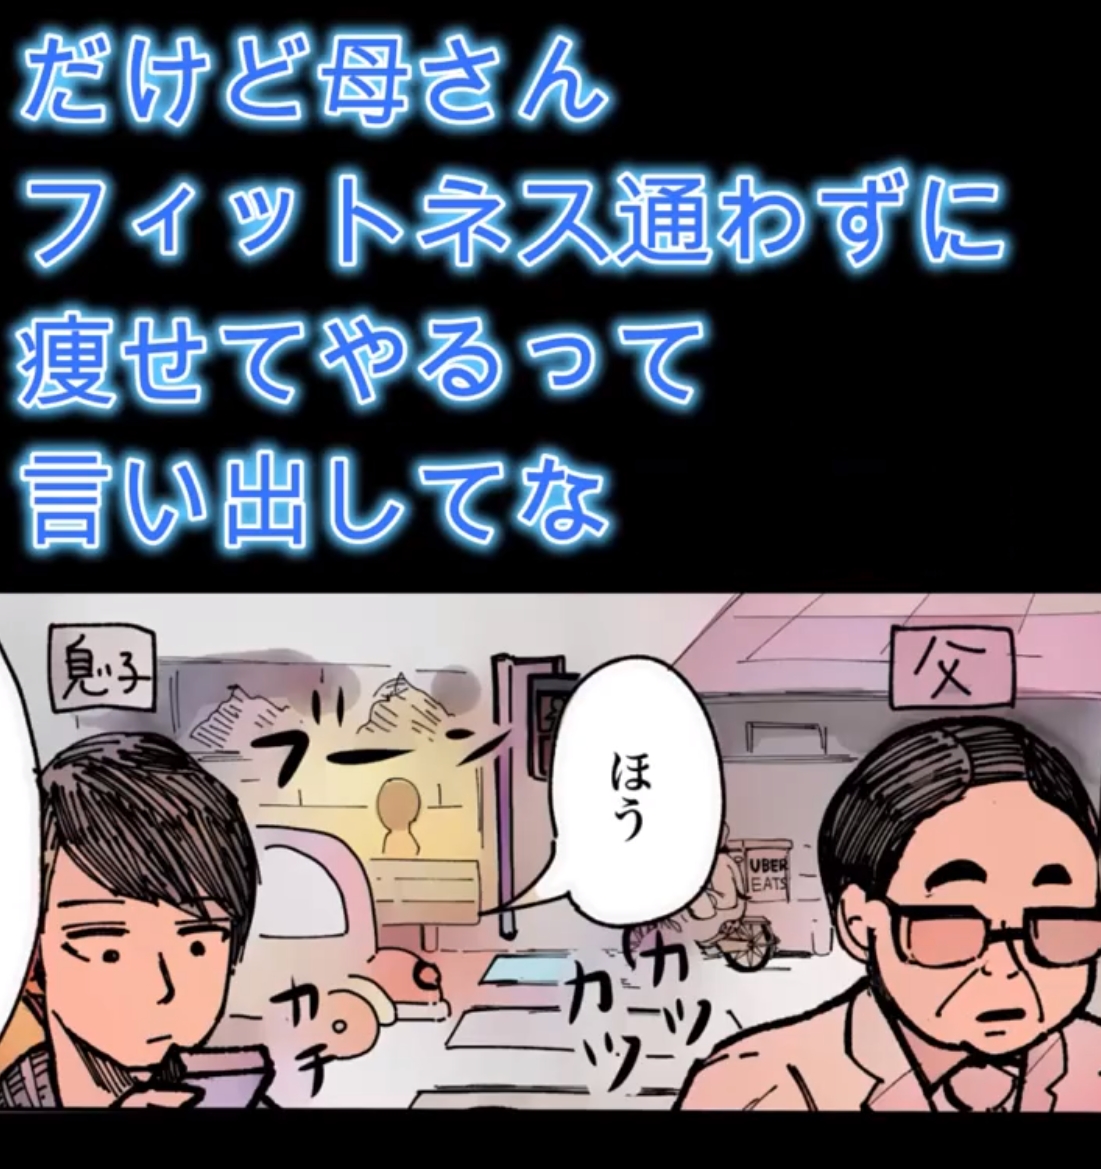 伊佐坂みつほ先生の漫画を動画にしました@m_isasaka
https://t.co/eZtvTt3KQM 